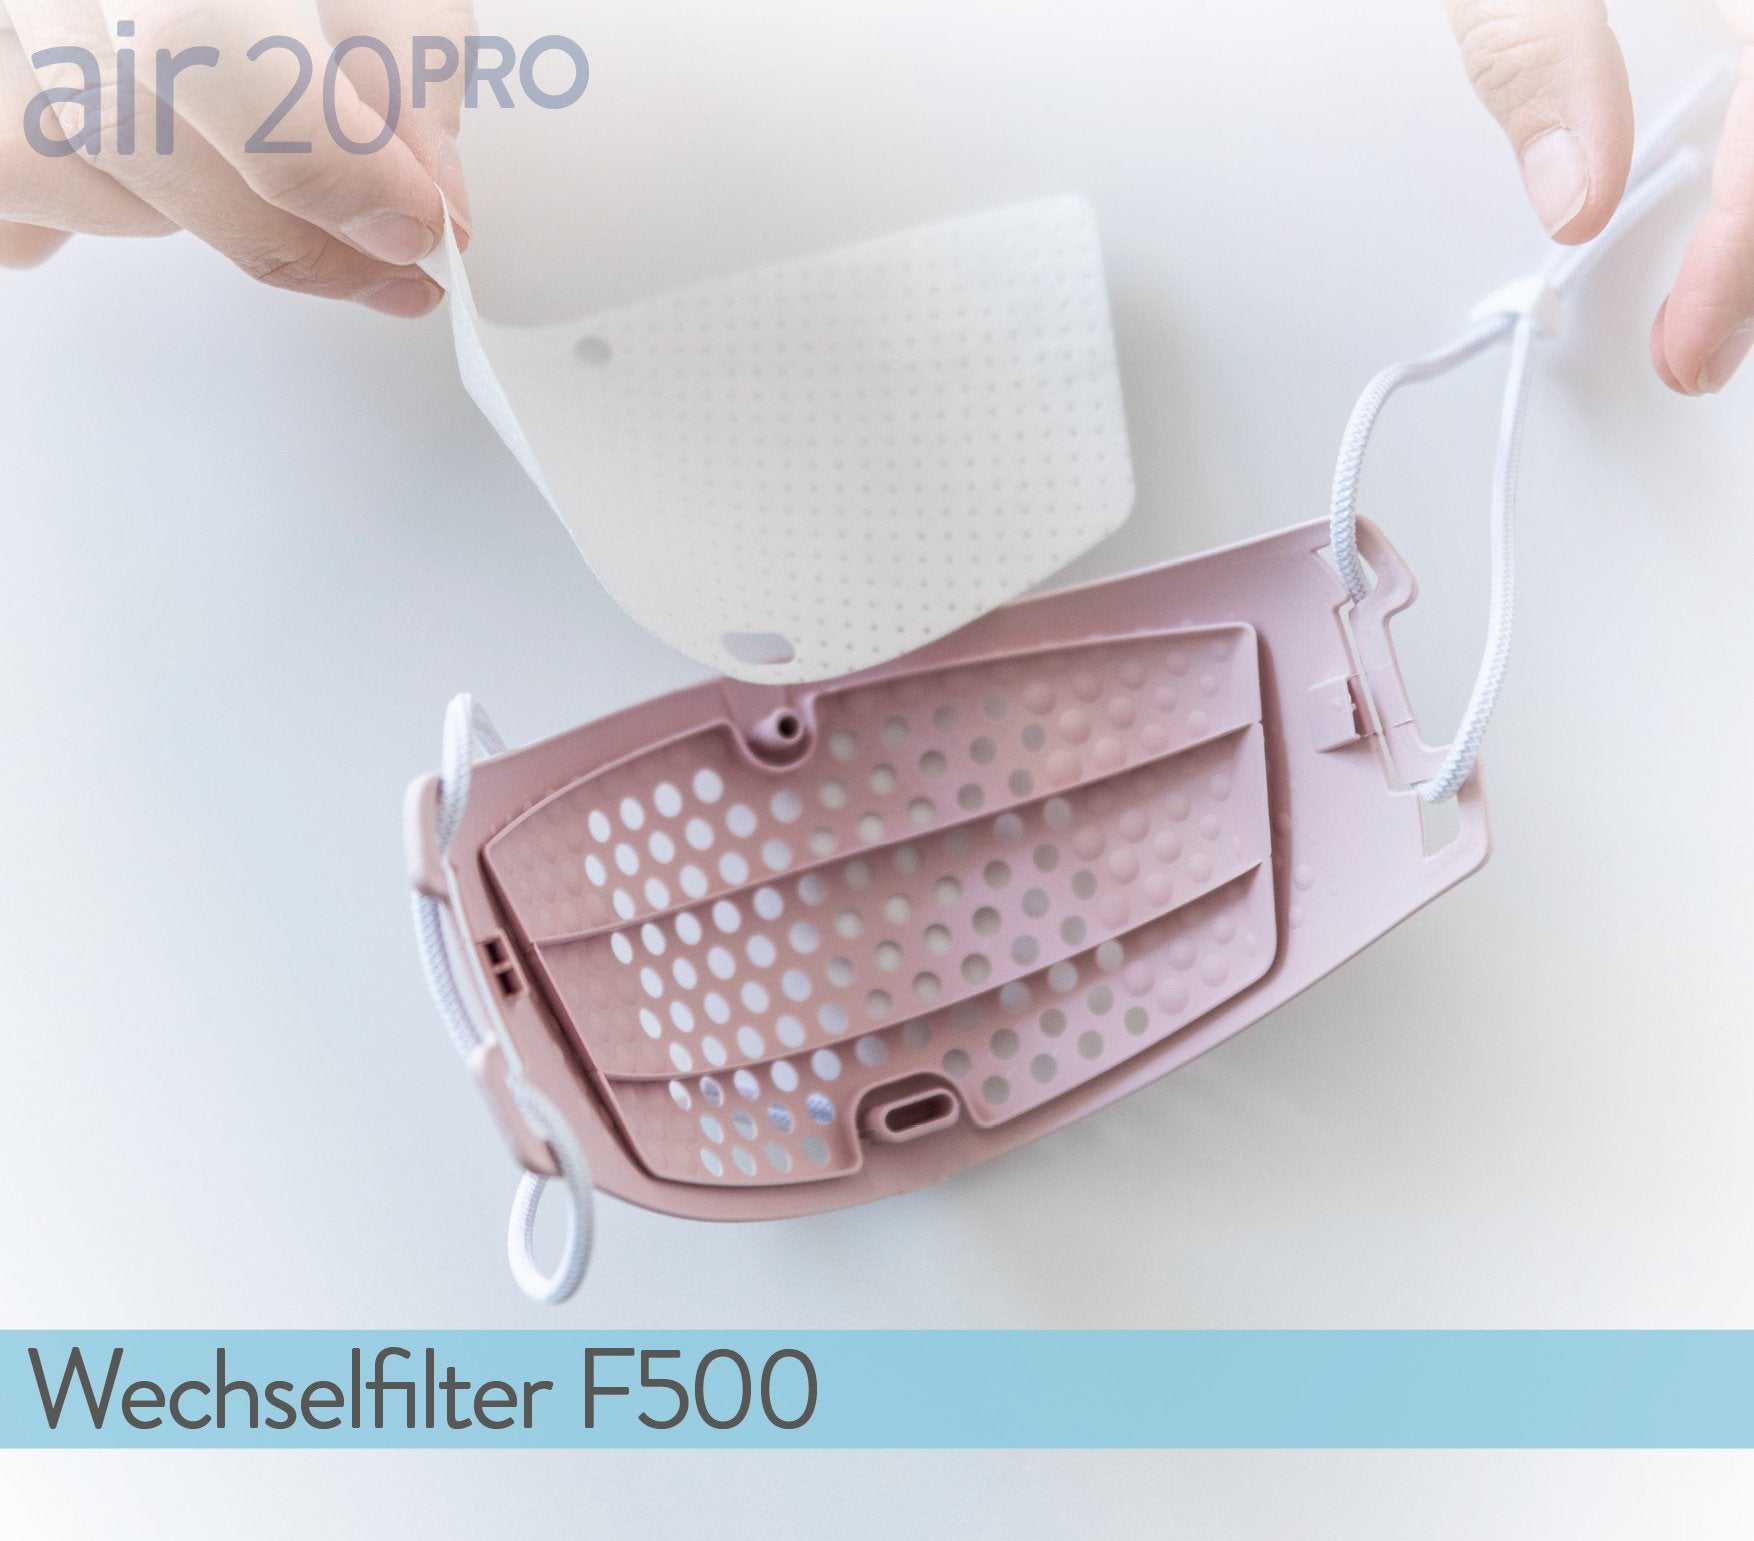 air20 PRO Wechselfilter F500 (25er)